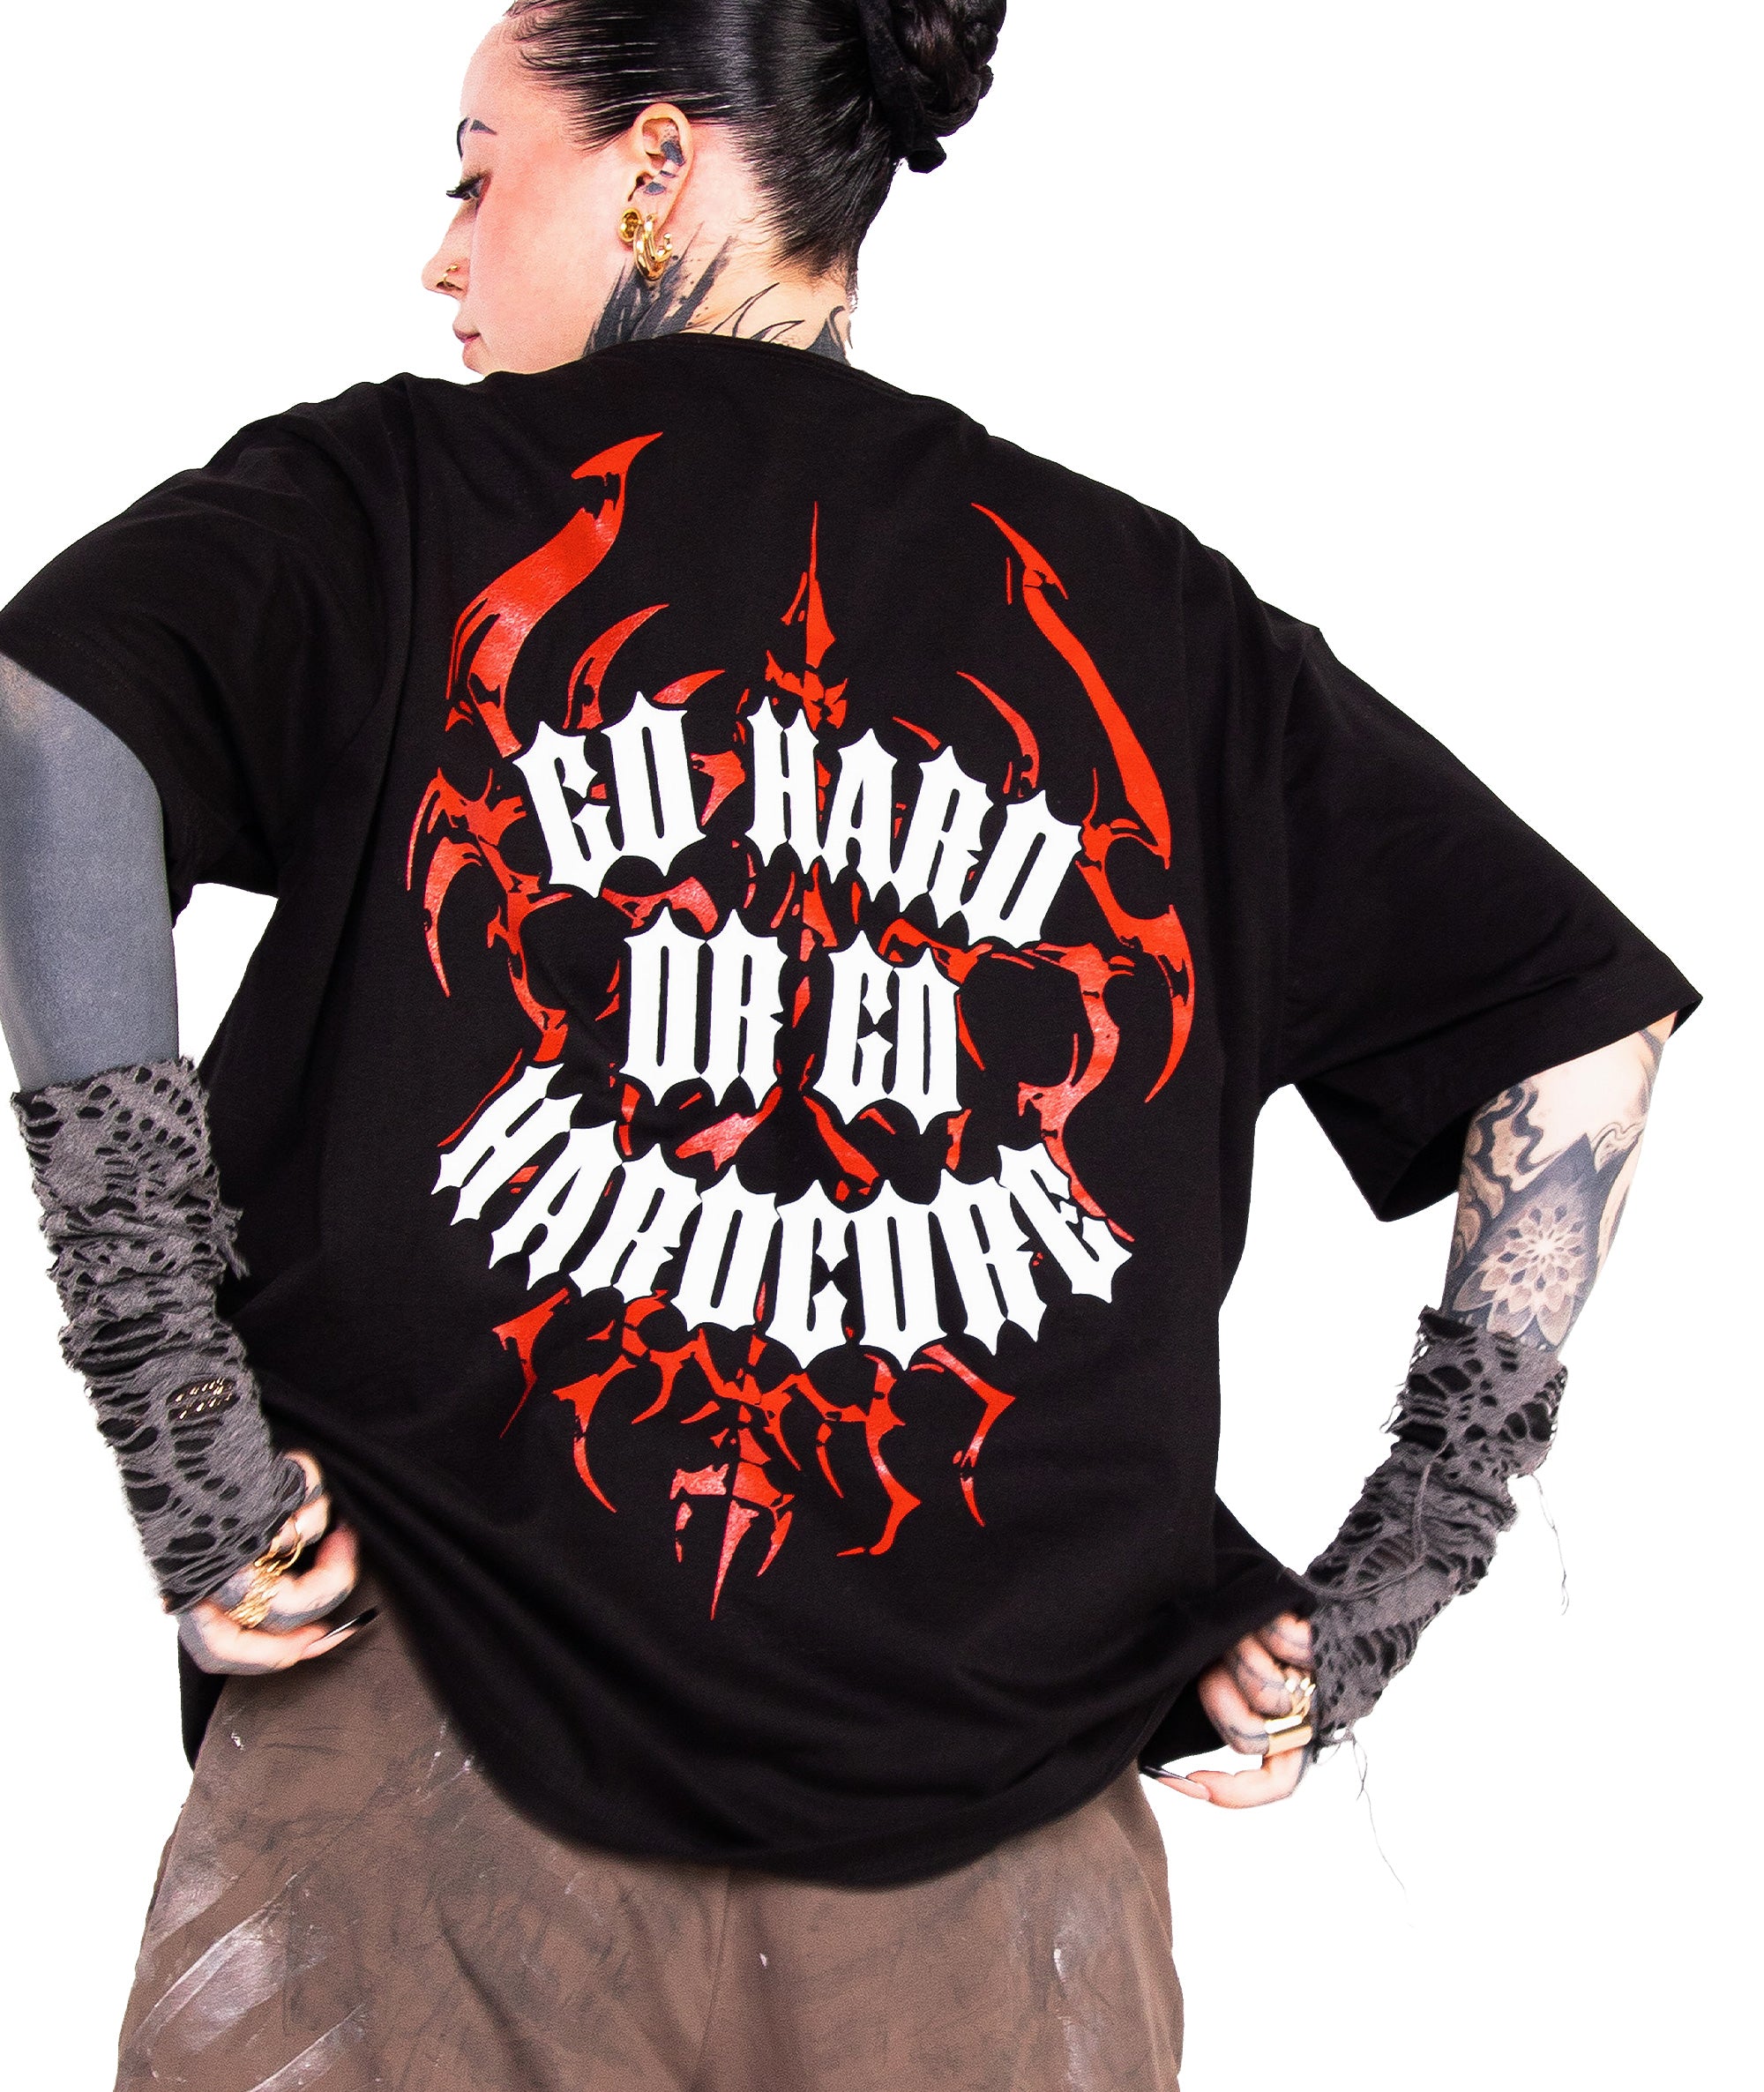 GO HARD OR GO HARDCORE T-Shirt | black, unisex